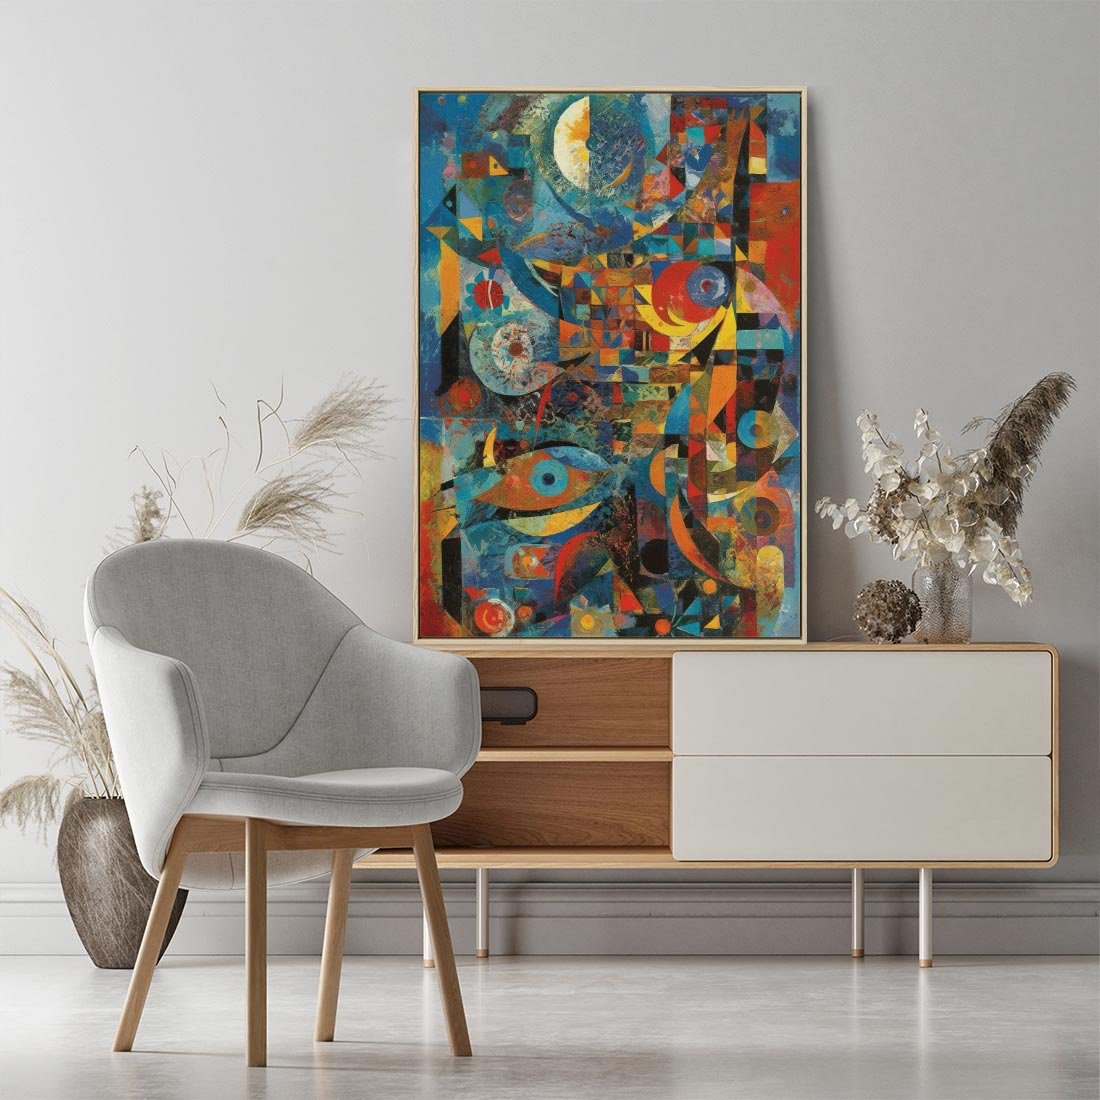 Obraz w ramie 50x70 - Migotliwe Przesunięcia Konturów - abstrakcyjny obraz, sztuka abstrakcji - rama drewno